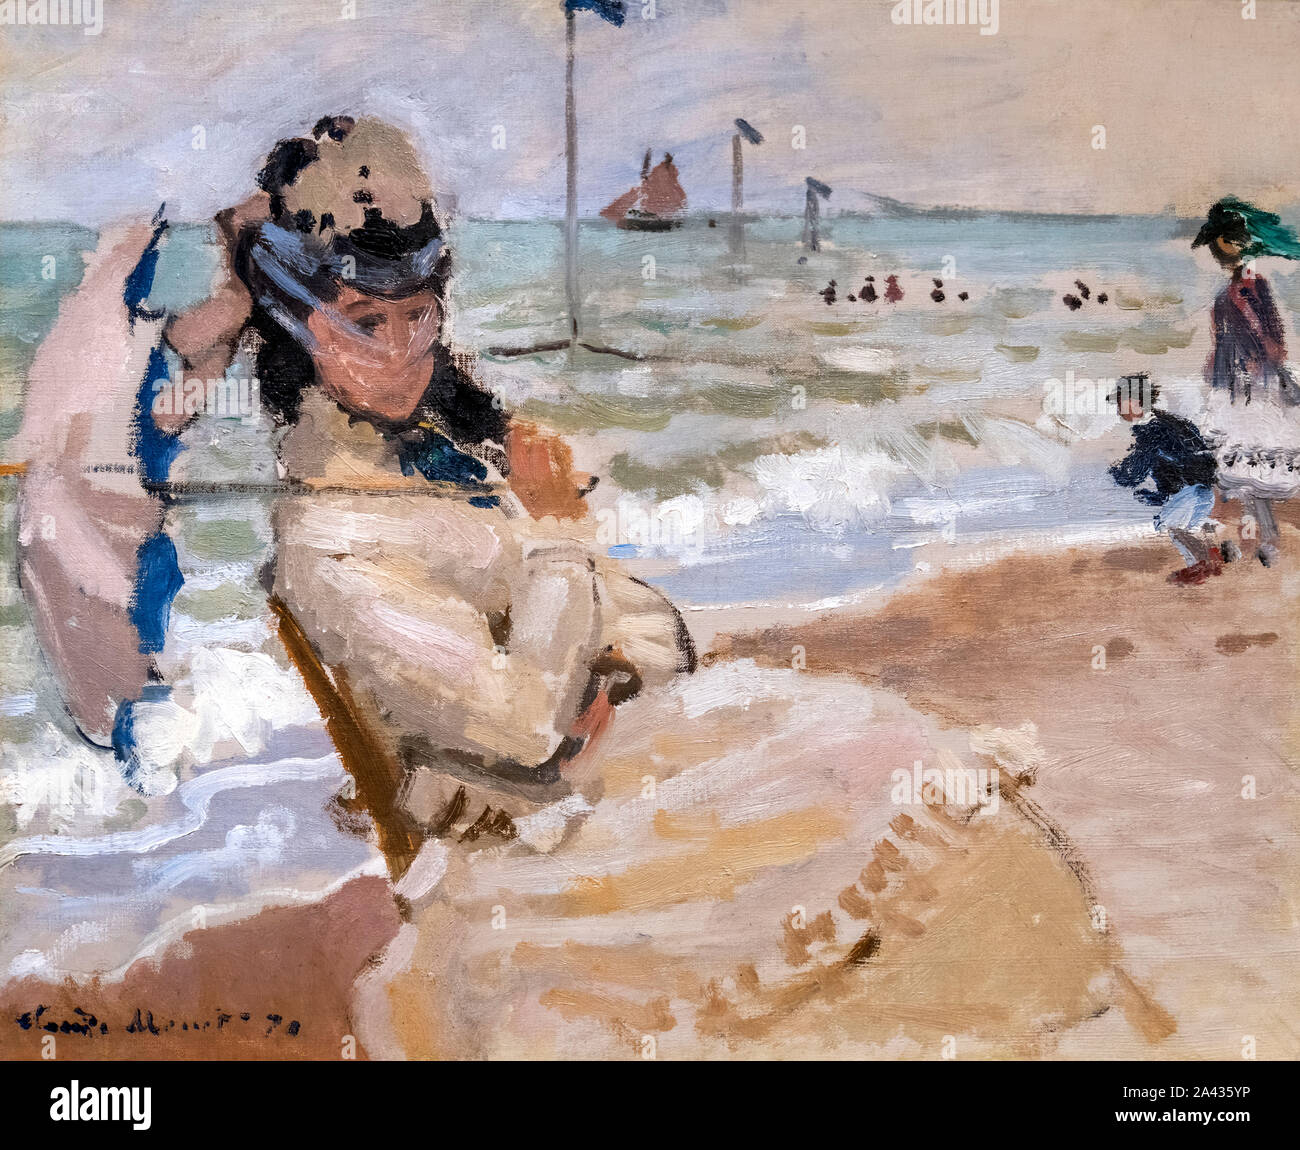 Camille am Strand von Trouville von Claude Monet (1840-1926), Öl auf Leinwand, 1870 Stockfoto